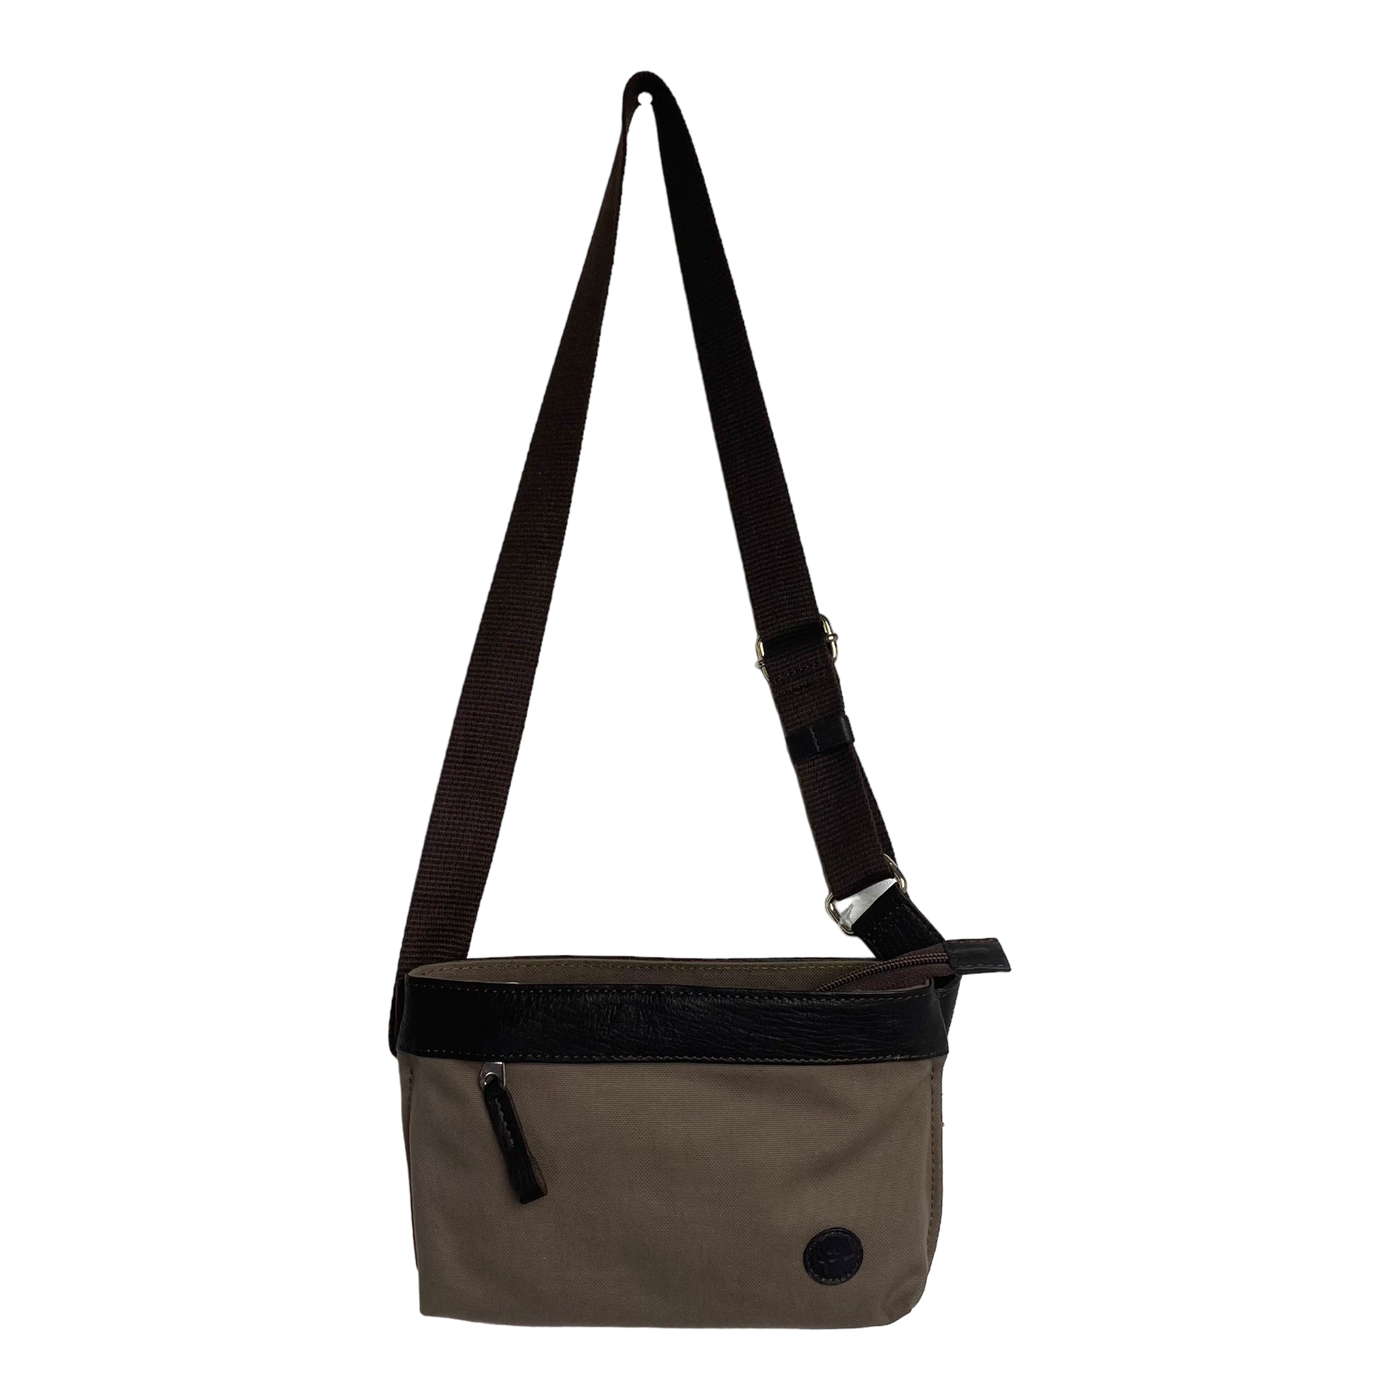 Harold's Bags belt bag small, sand/brown